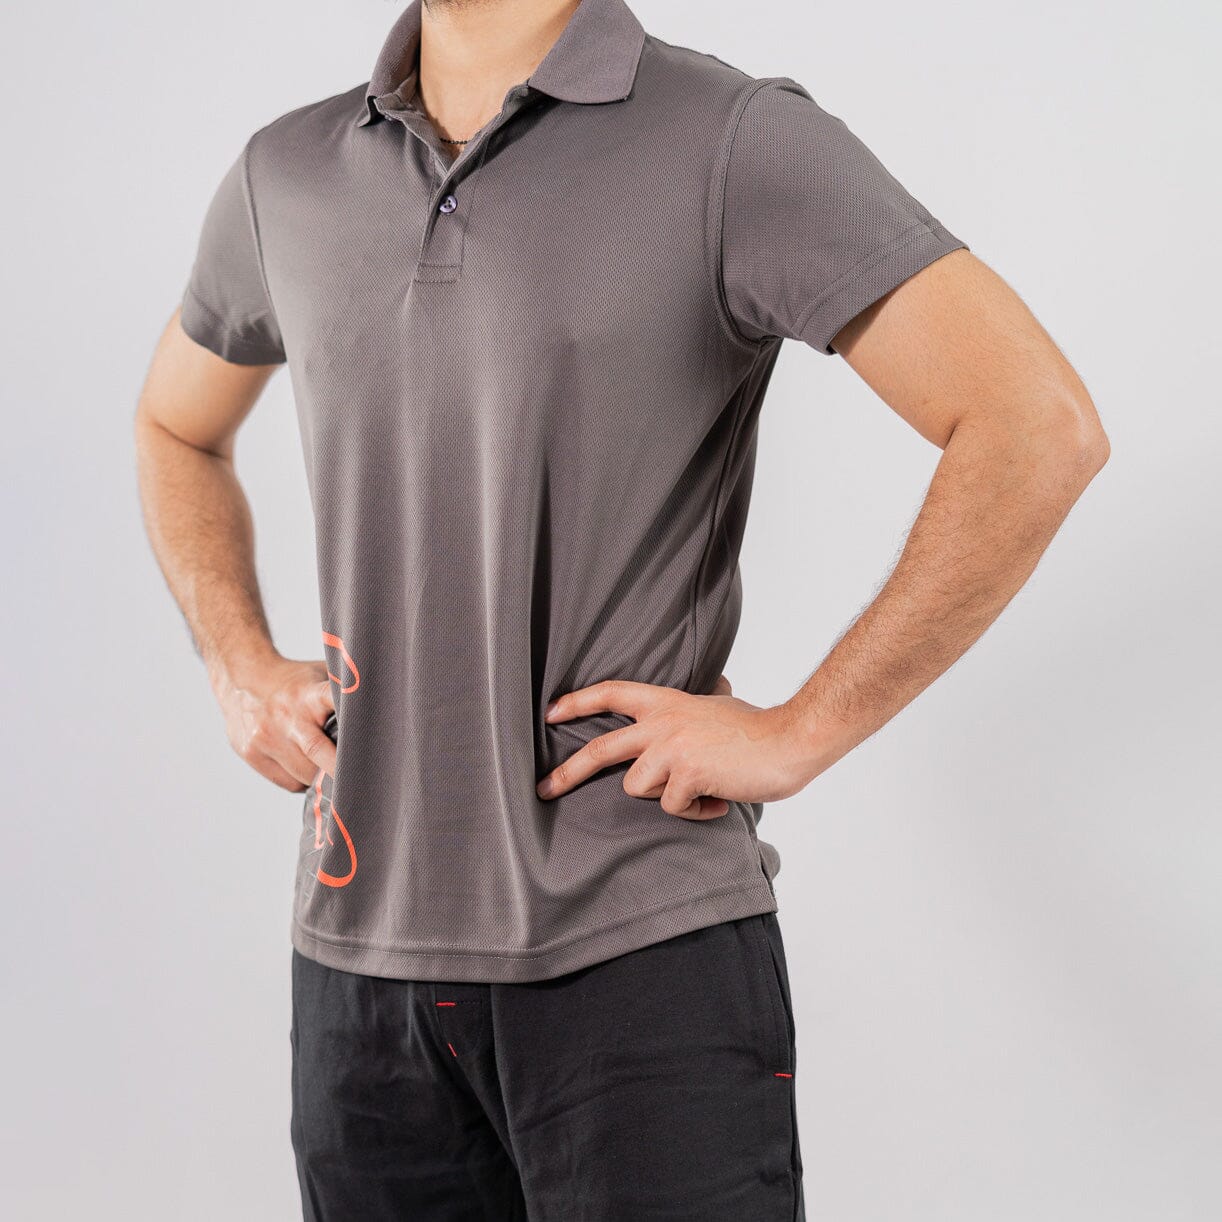 Polo Republica Men's Never Enough Printed Moisture Wicking Activewear Polo Shirt Men's Polo Shirt Polo Republica Graphite S 